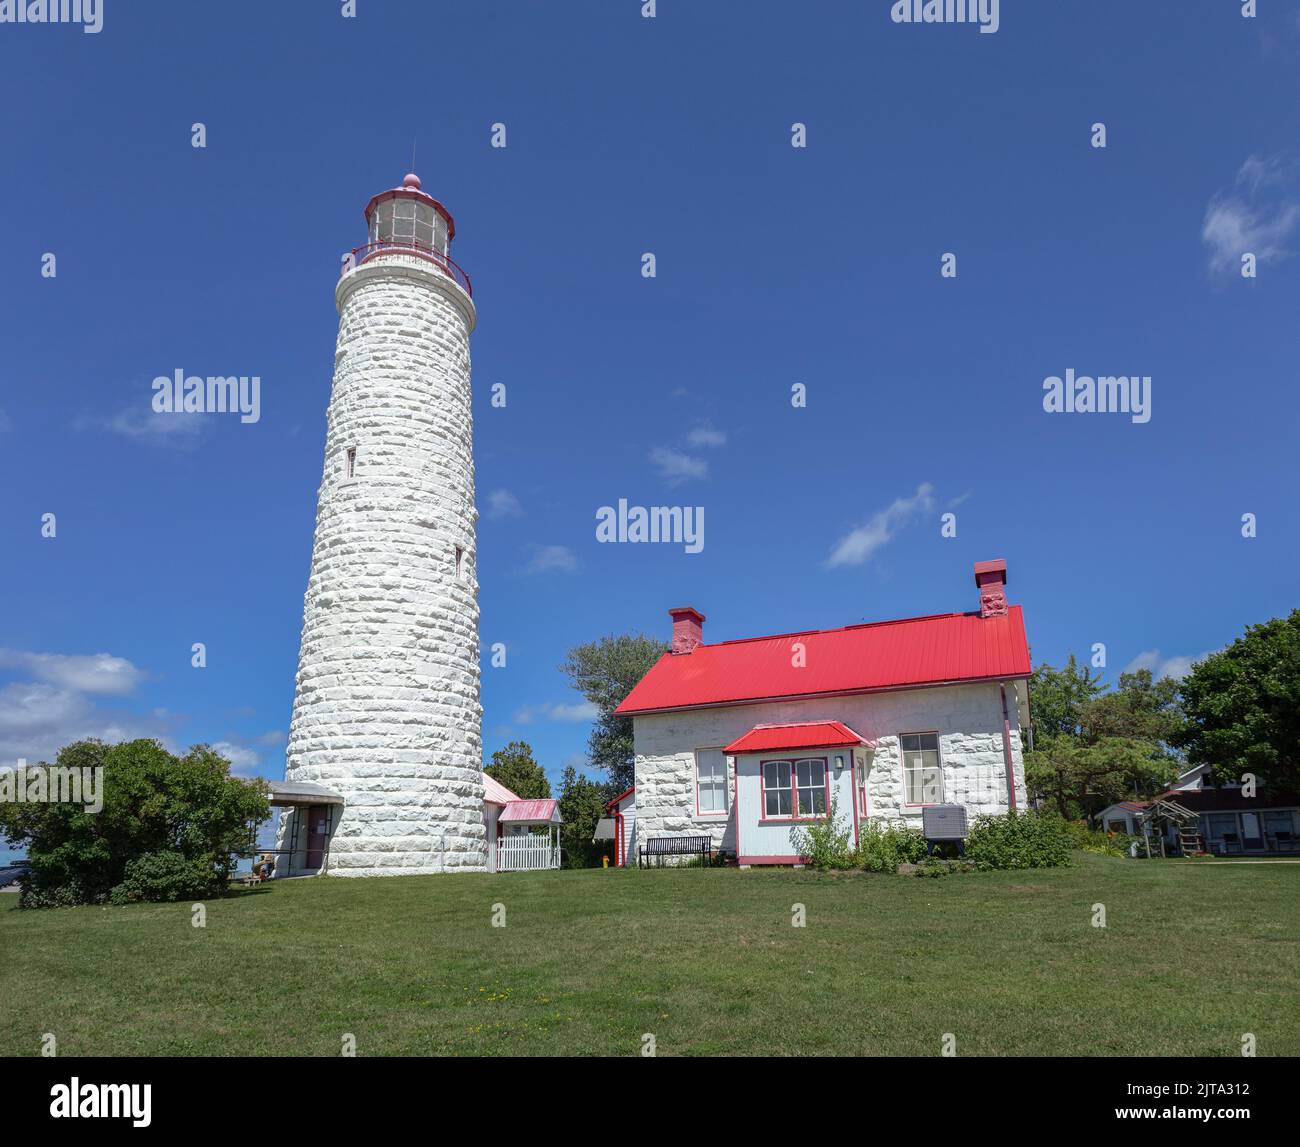 Point Clark Lighthouse construido en 1859 en las costas del Lago Huron Ontario, Canadá, Un faro de piedra Great Lakes Lighthouse National Historic Site de Canadá Foto de stock